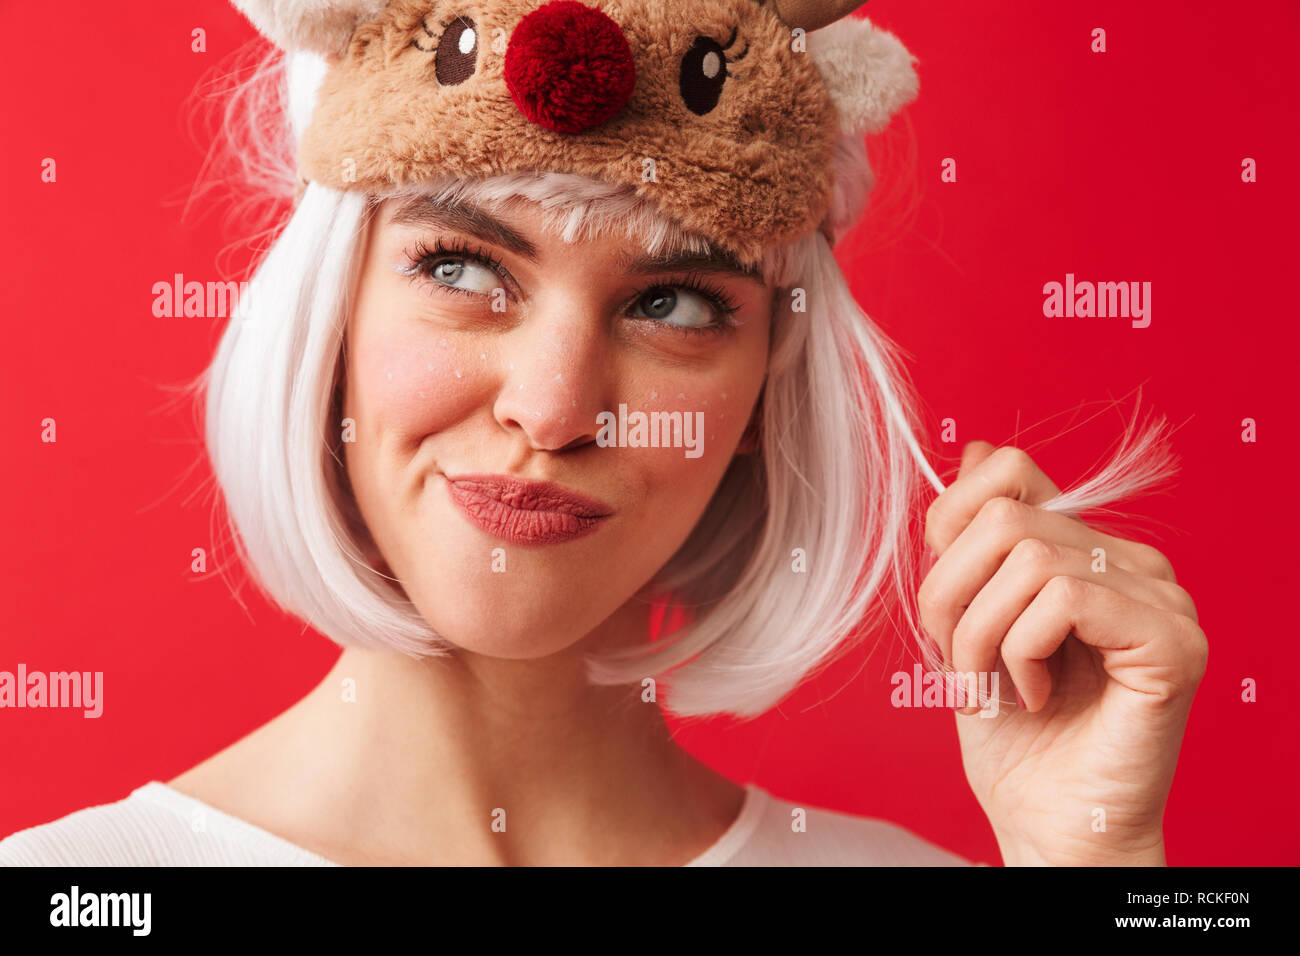 Bild einer jungen schönen Frau in Karneval Weihnachten kostüm über rote Wand Hintergrund spielen mit Haar isoliert Posing gekleidet. Stockfoto